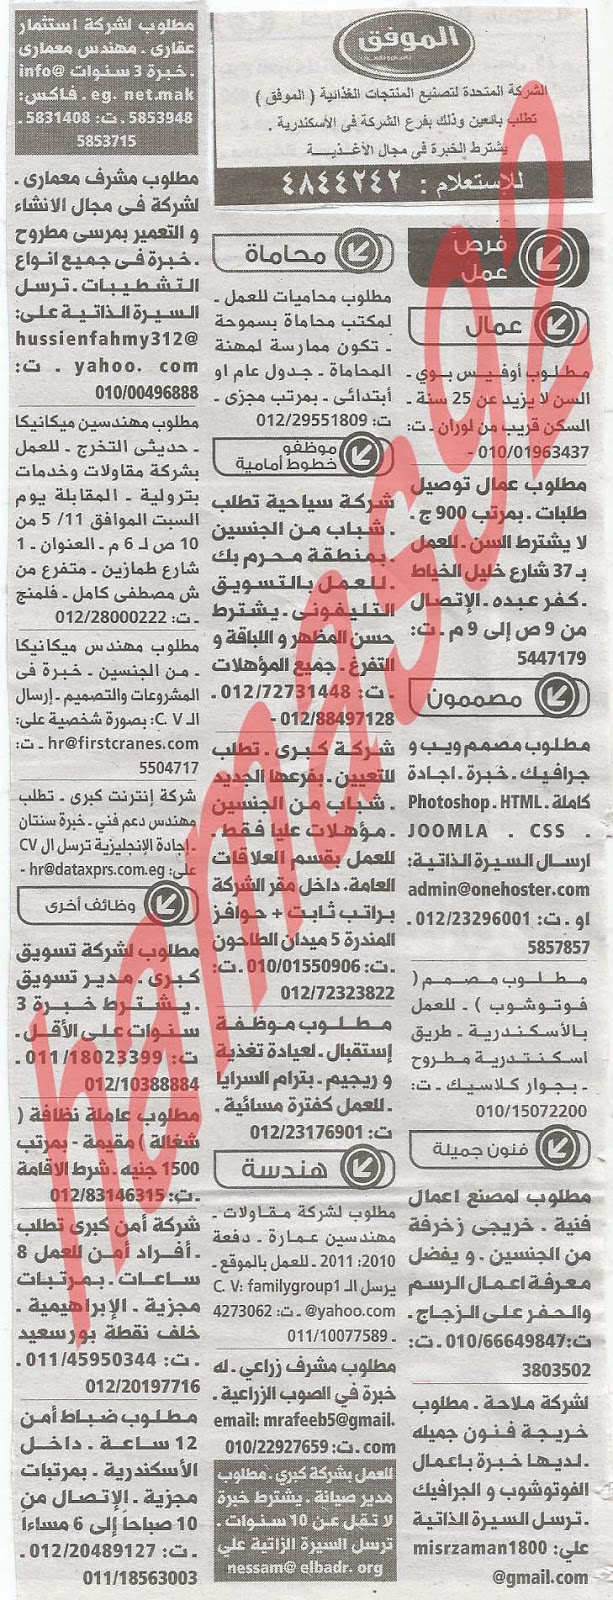 وظائف خالية فى جريدة الوسيط الاسكندرية الجمعة 10-05-2013 %D9%88+%D8%B3+%D8%B3+1